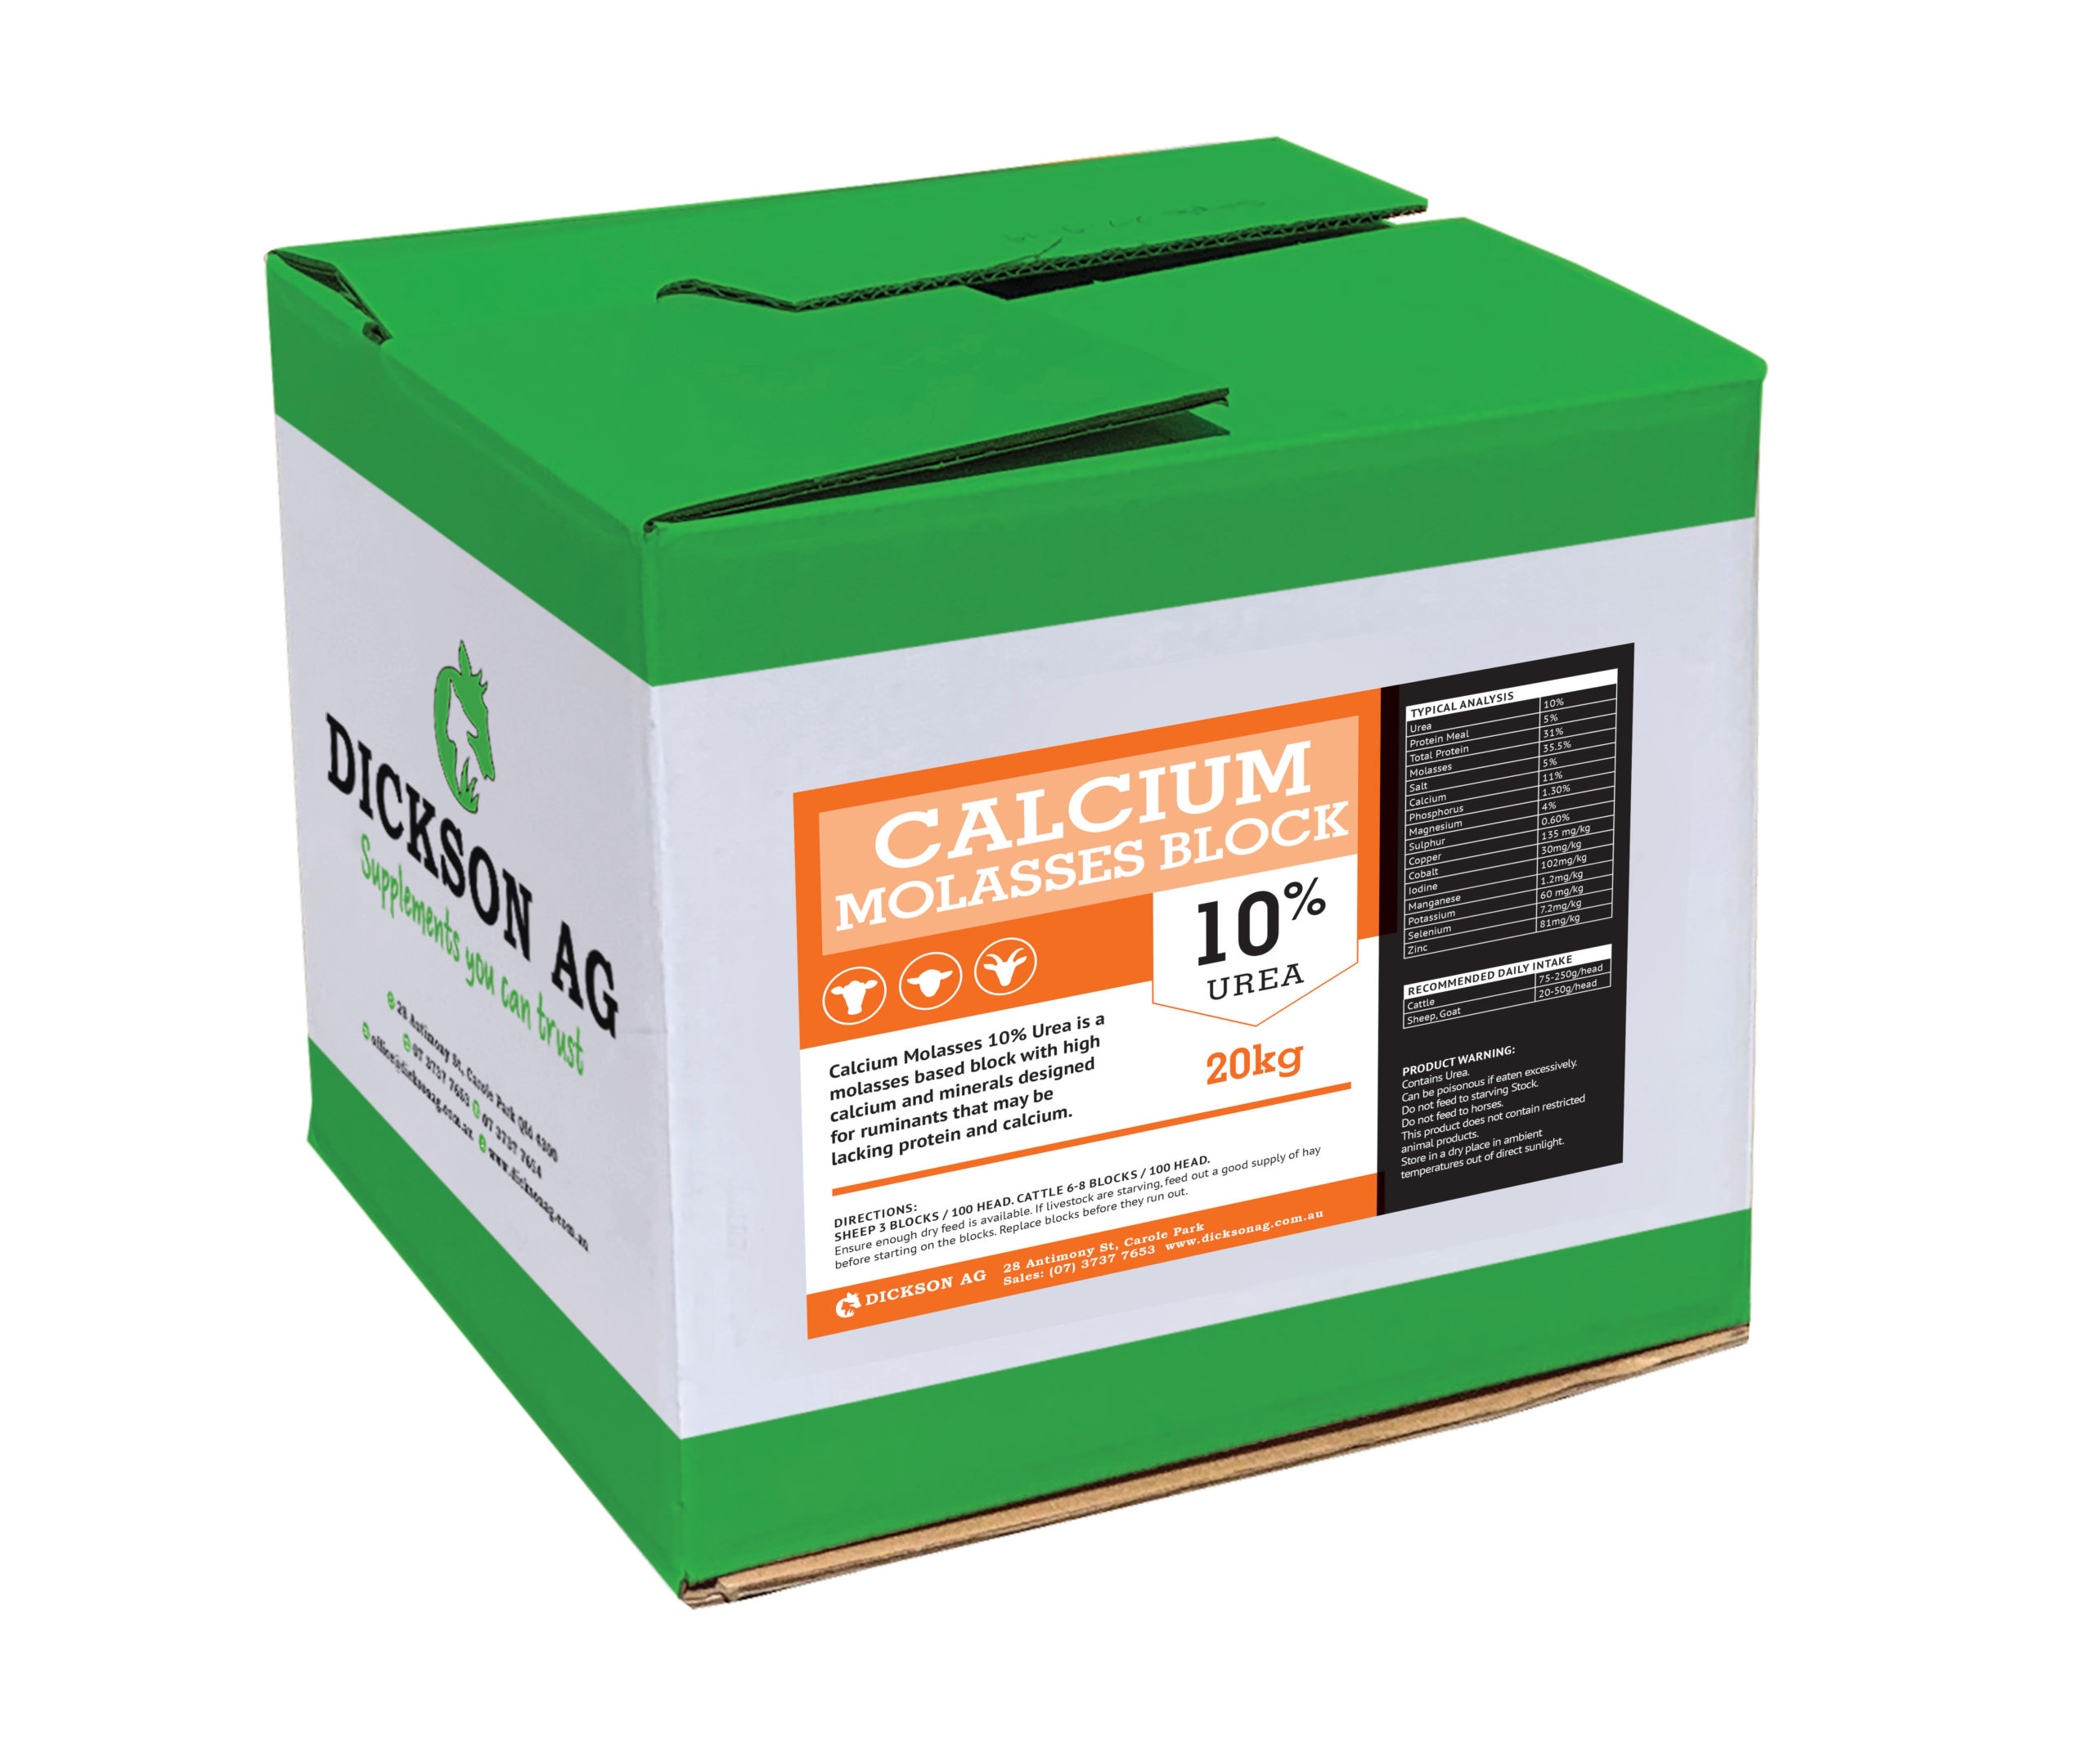 Calcium Molasses 10% urea 20KG Box